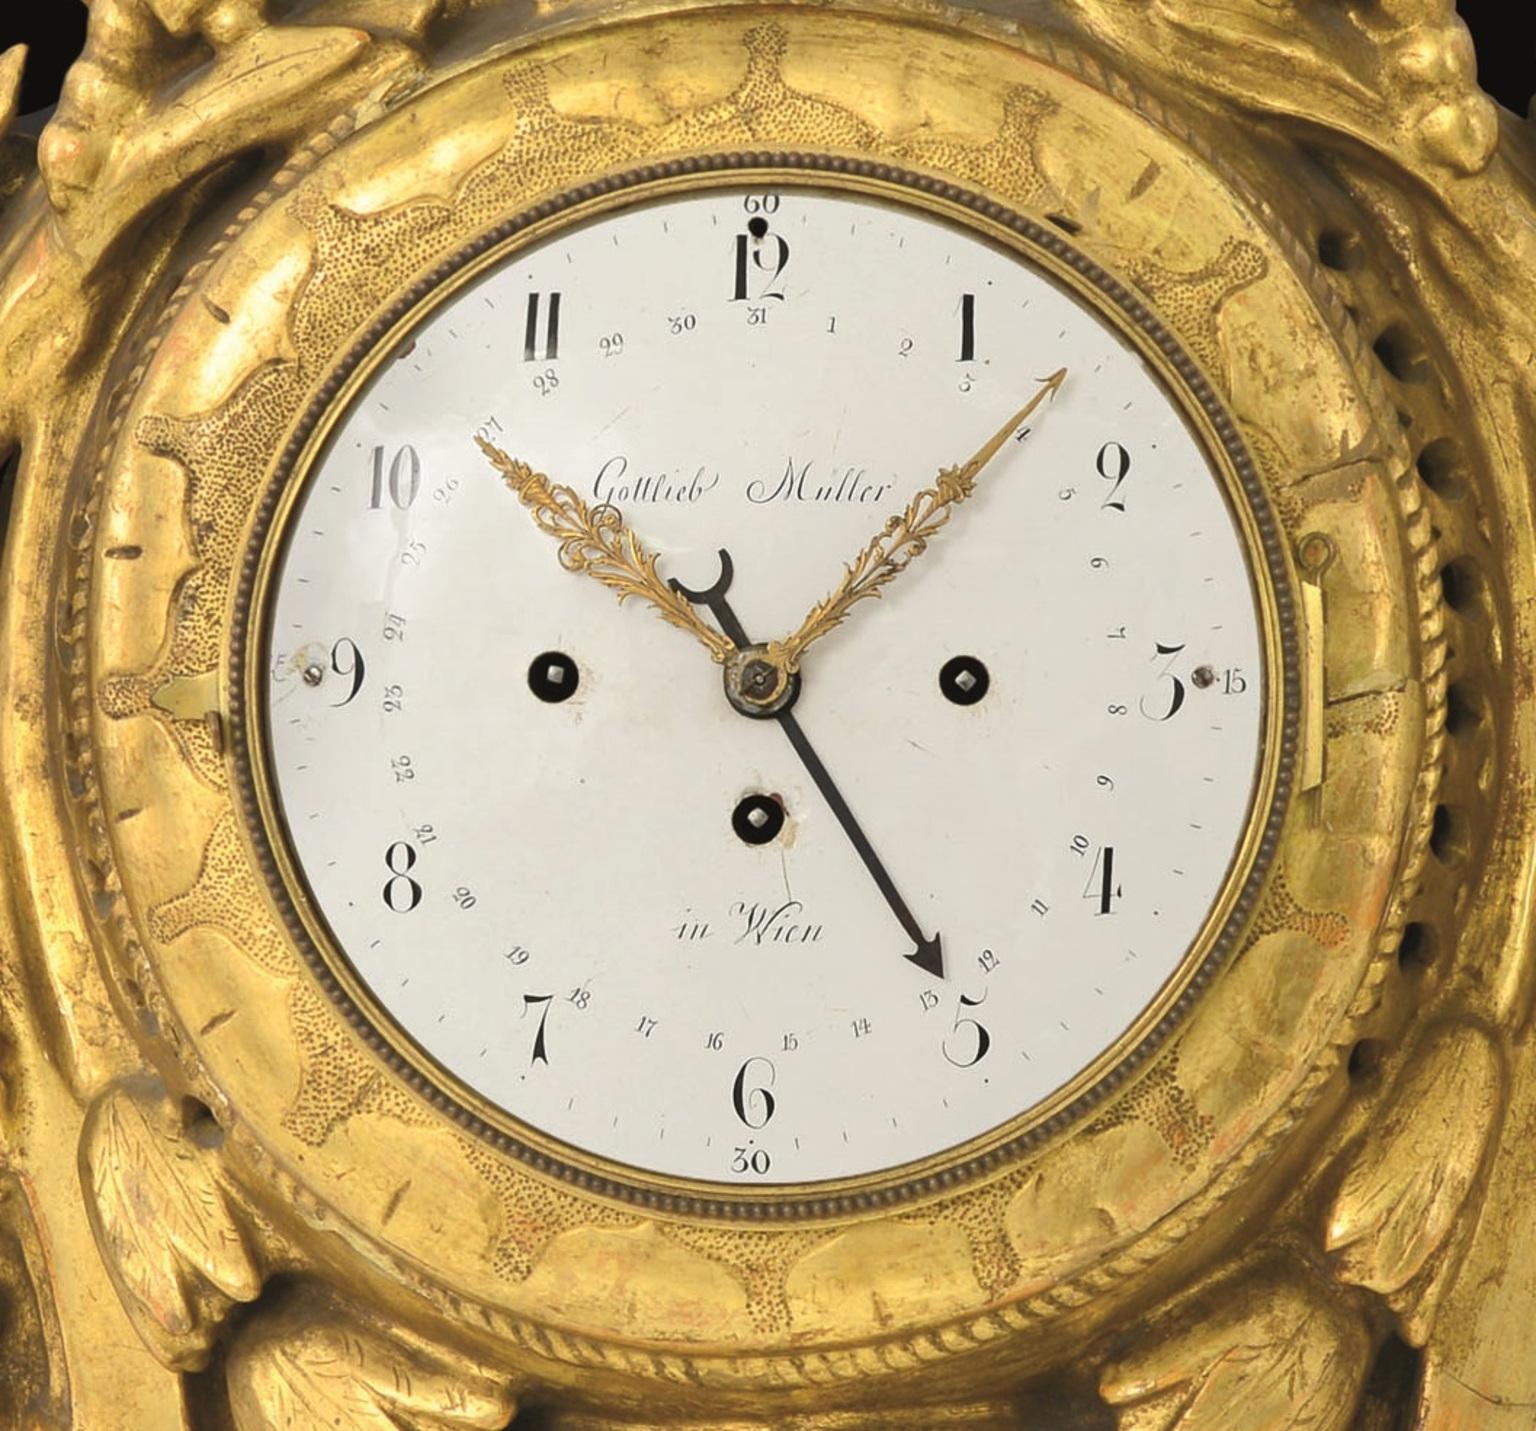 1700s clock